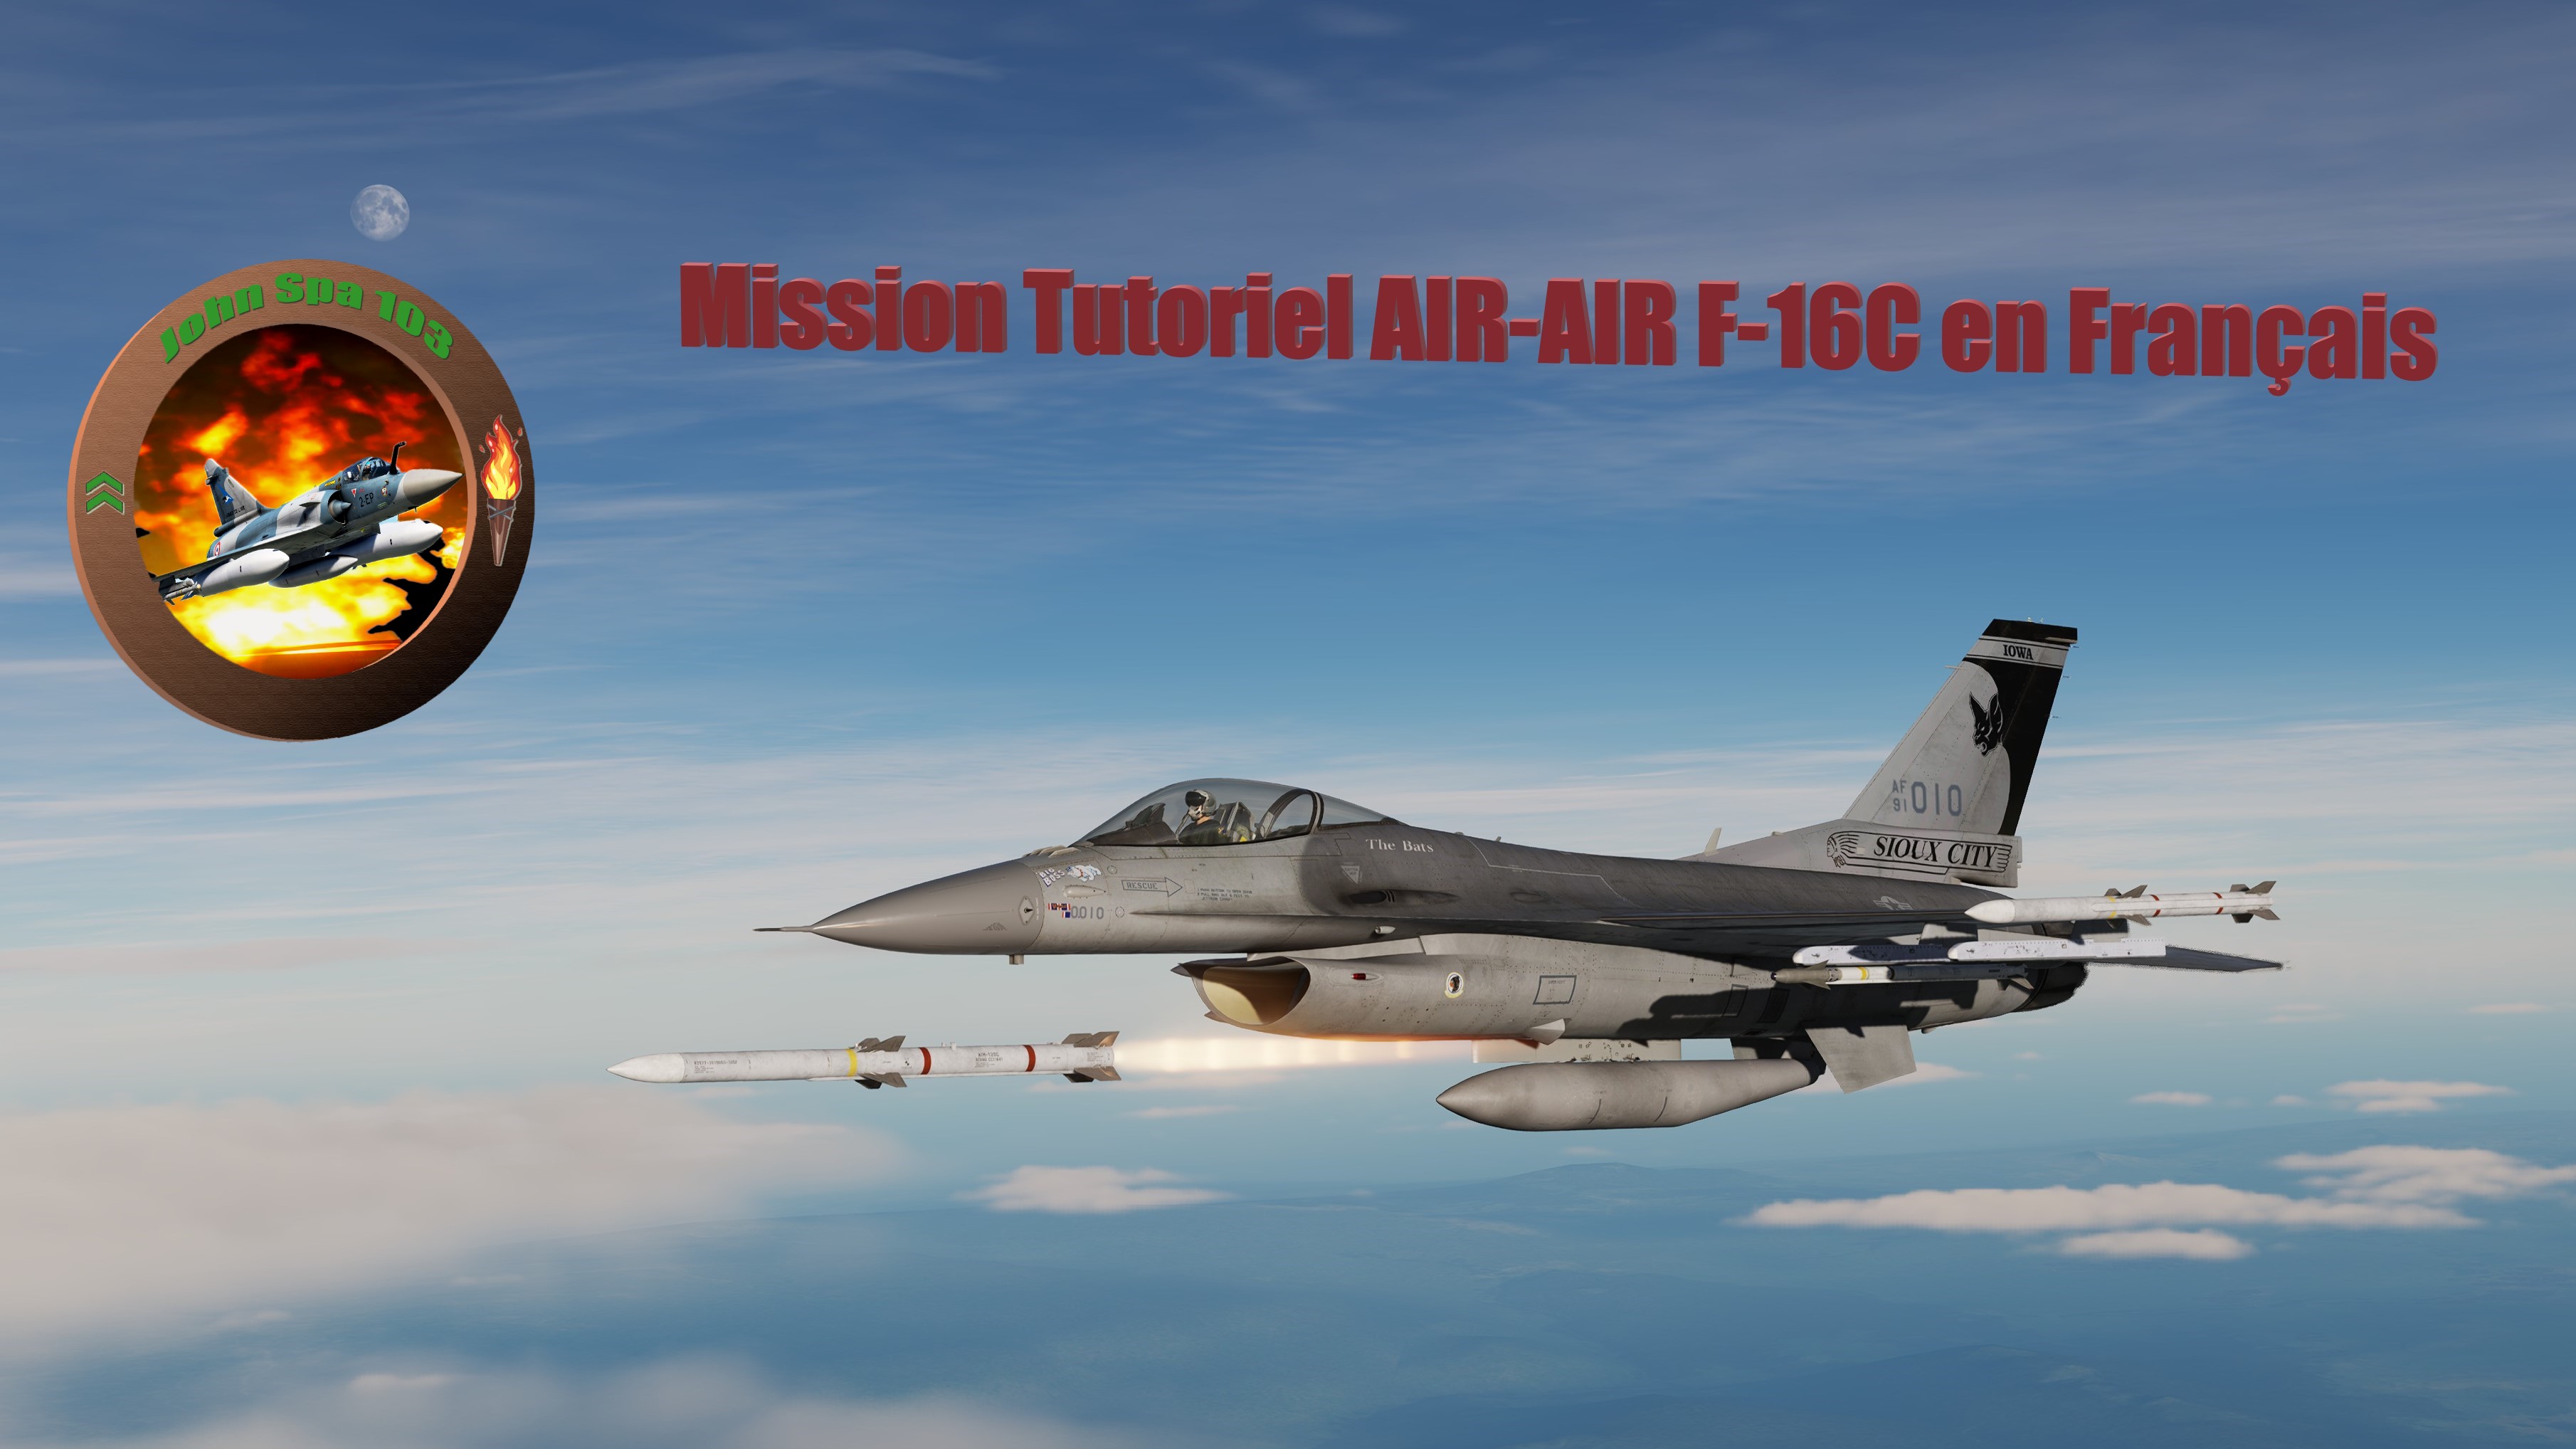 Mission tutoriel/Training F-16C Viper